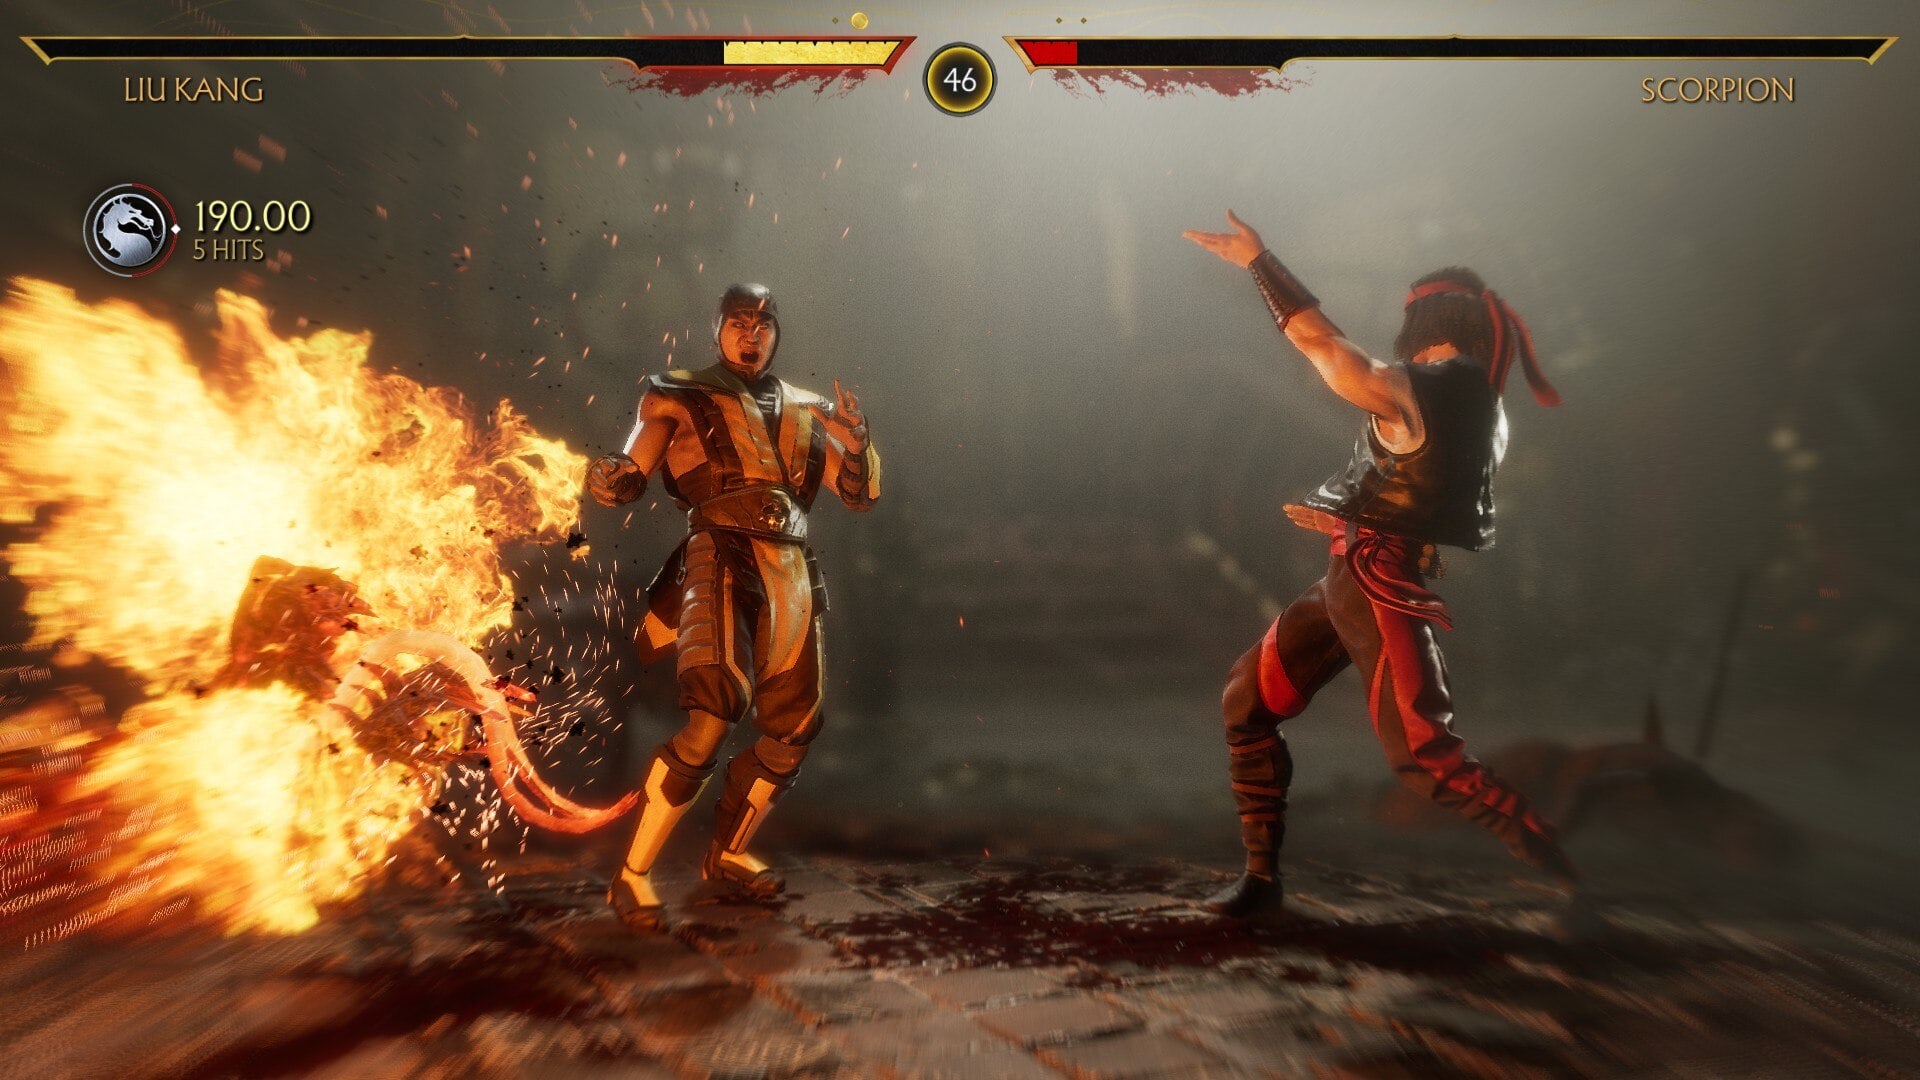 Xbox Game Pass gry najlepsza fabuła - Mortal Kombat 11